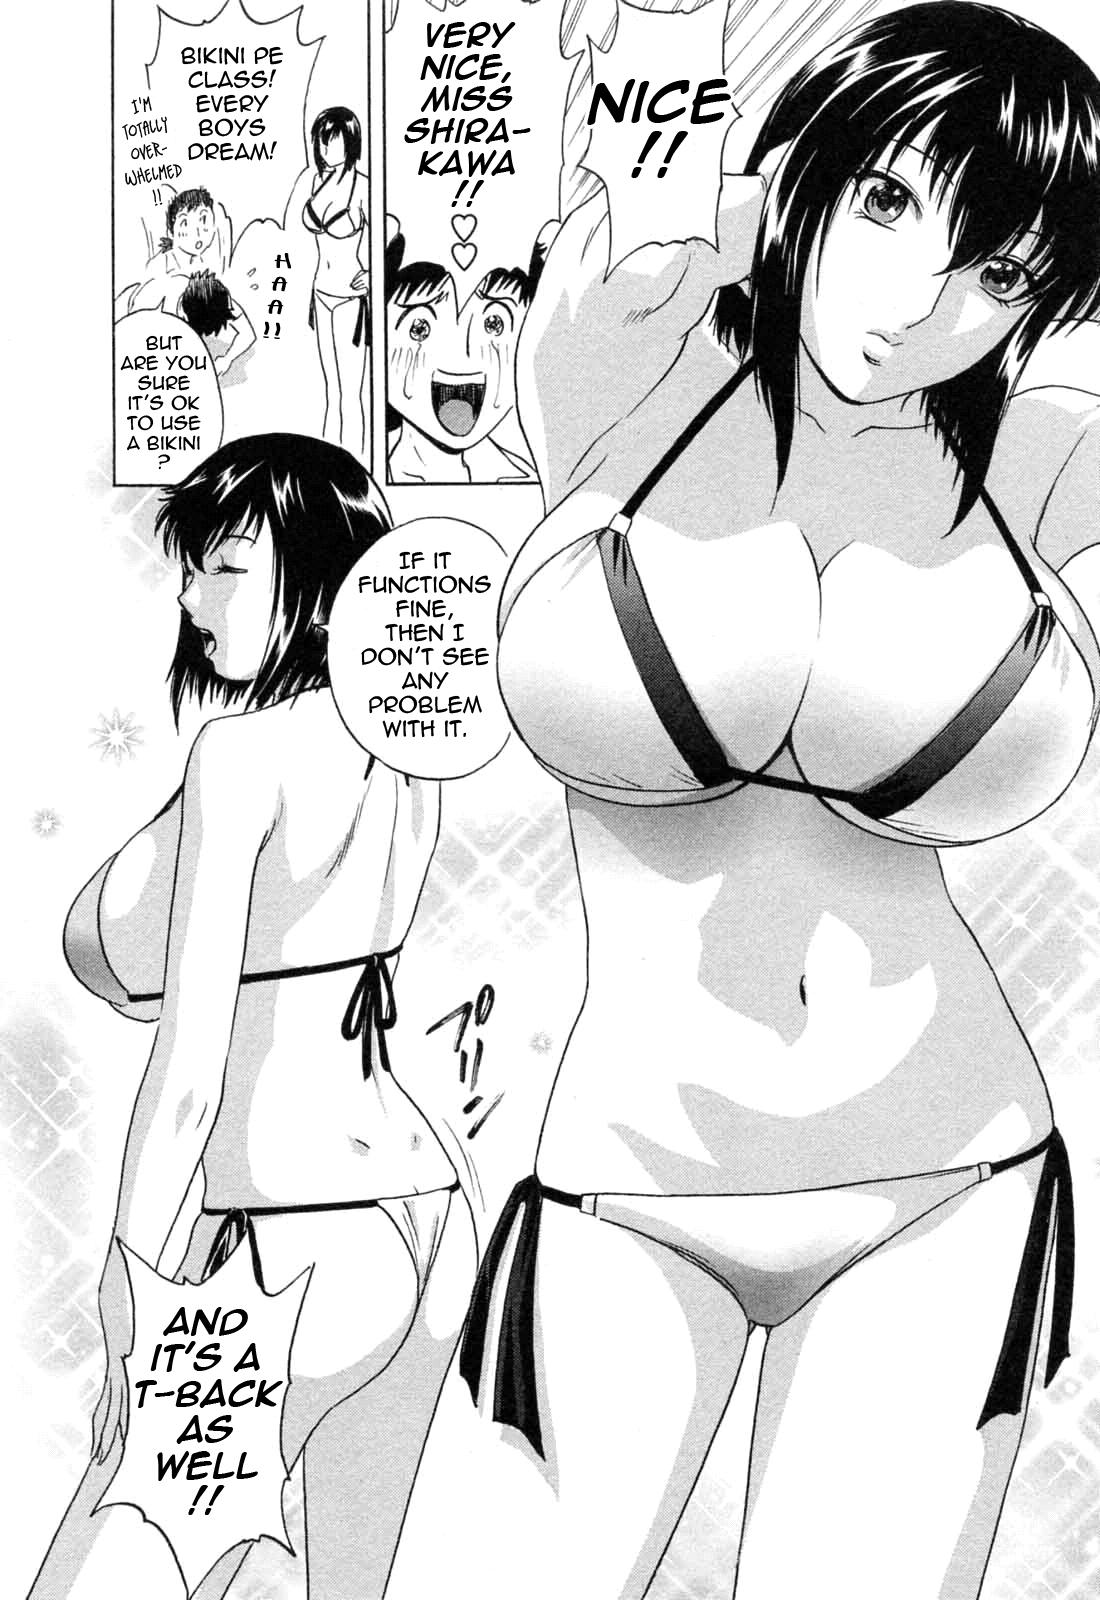 [Hidemaru] Mo-Retsu! Boin Sensei (Boing Boing Teacher) Vol.5 [English] [4dawgz] [Tadanohito] 119